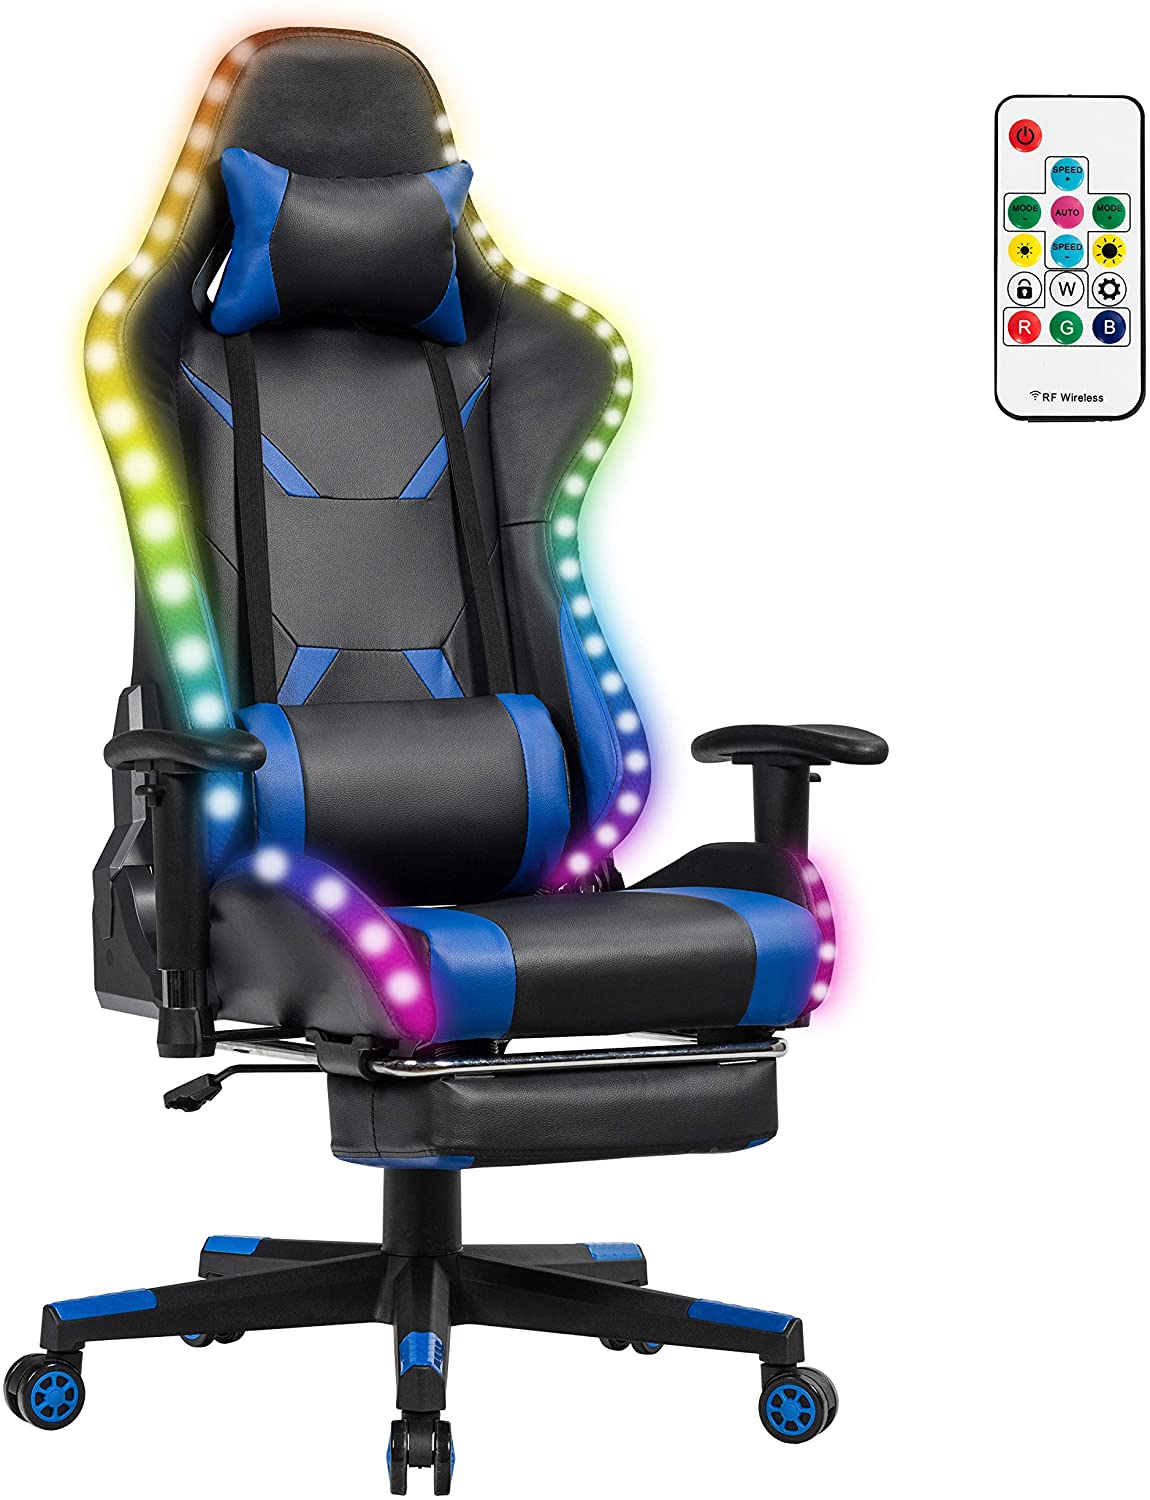 GameStar Gaming-Stuhl – Einen besseren werdet ihr kaum finden